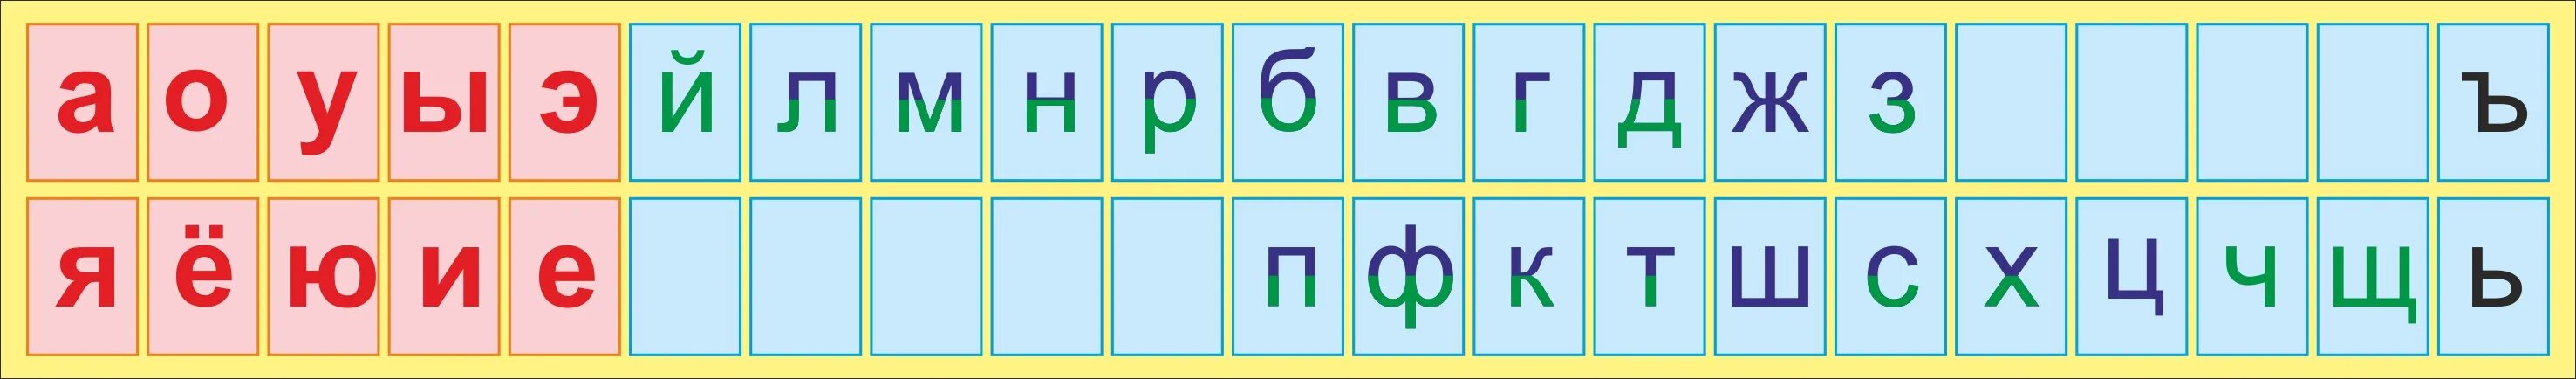 Алфавит гласные и согласные буквы. Лента букв. Русский алфавит с гласными и согласными буквами. Азбука гласных и согласных букв.